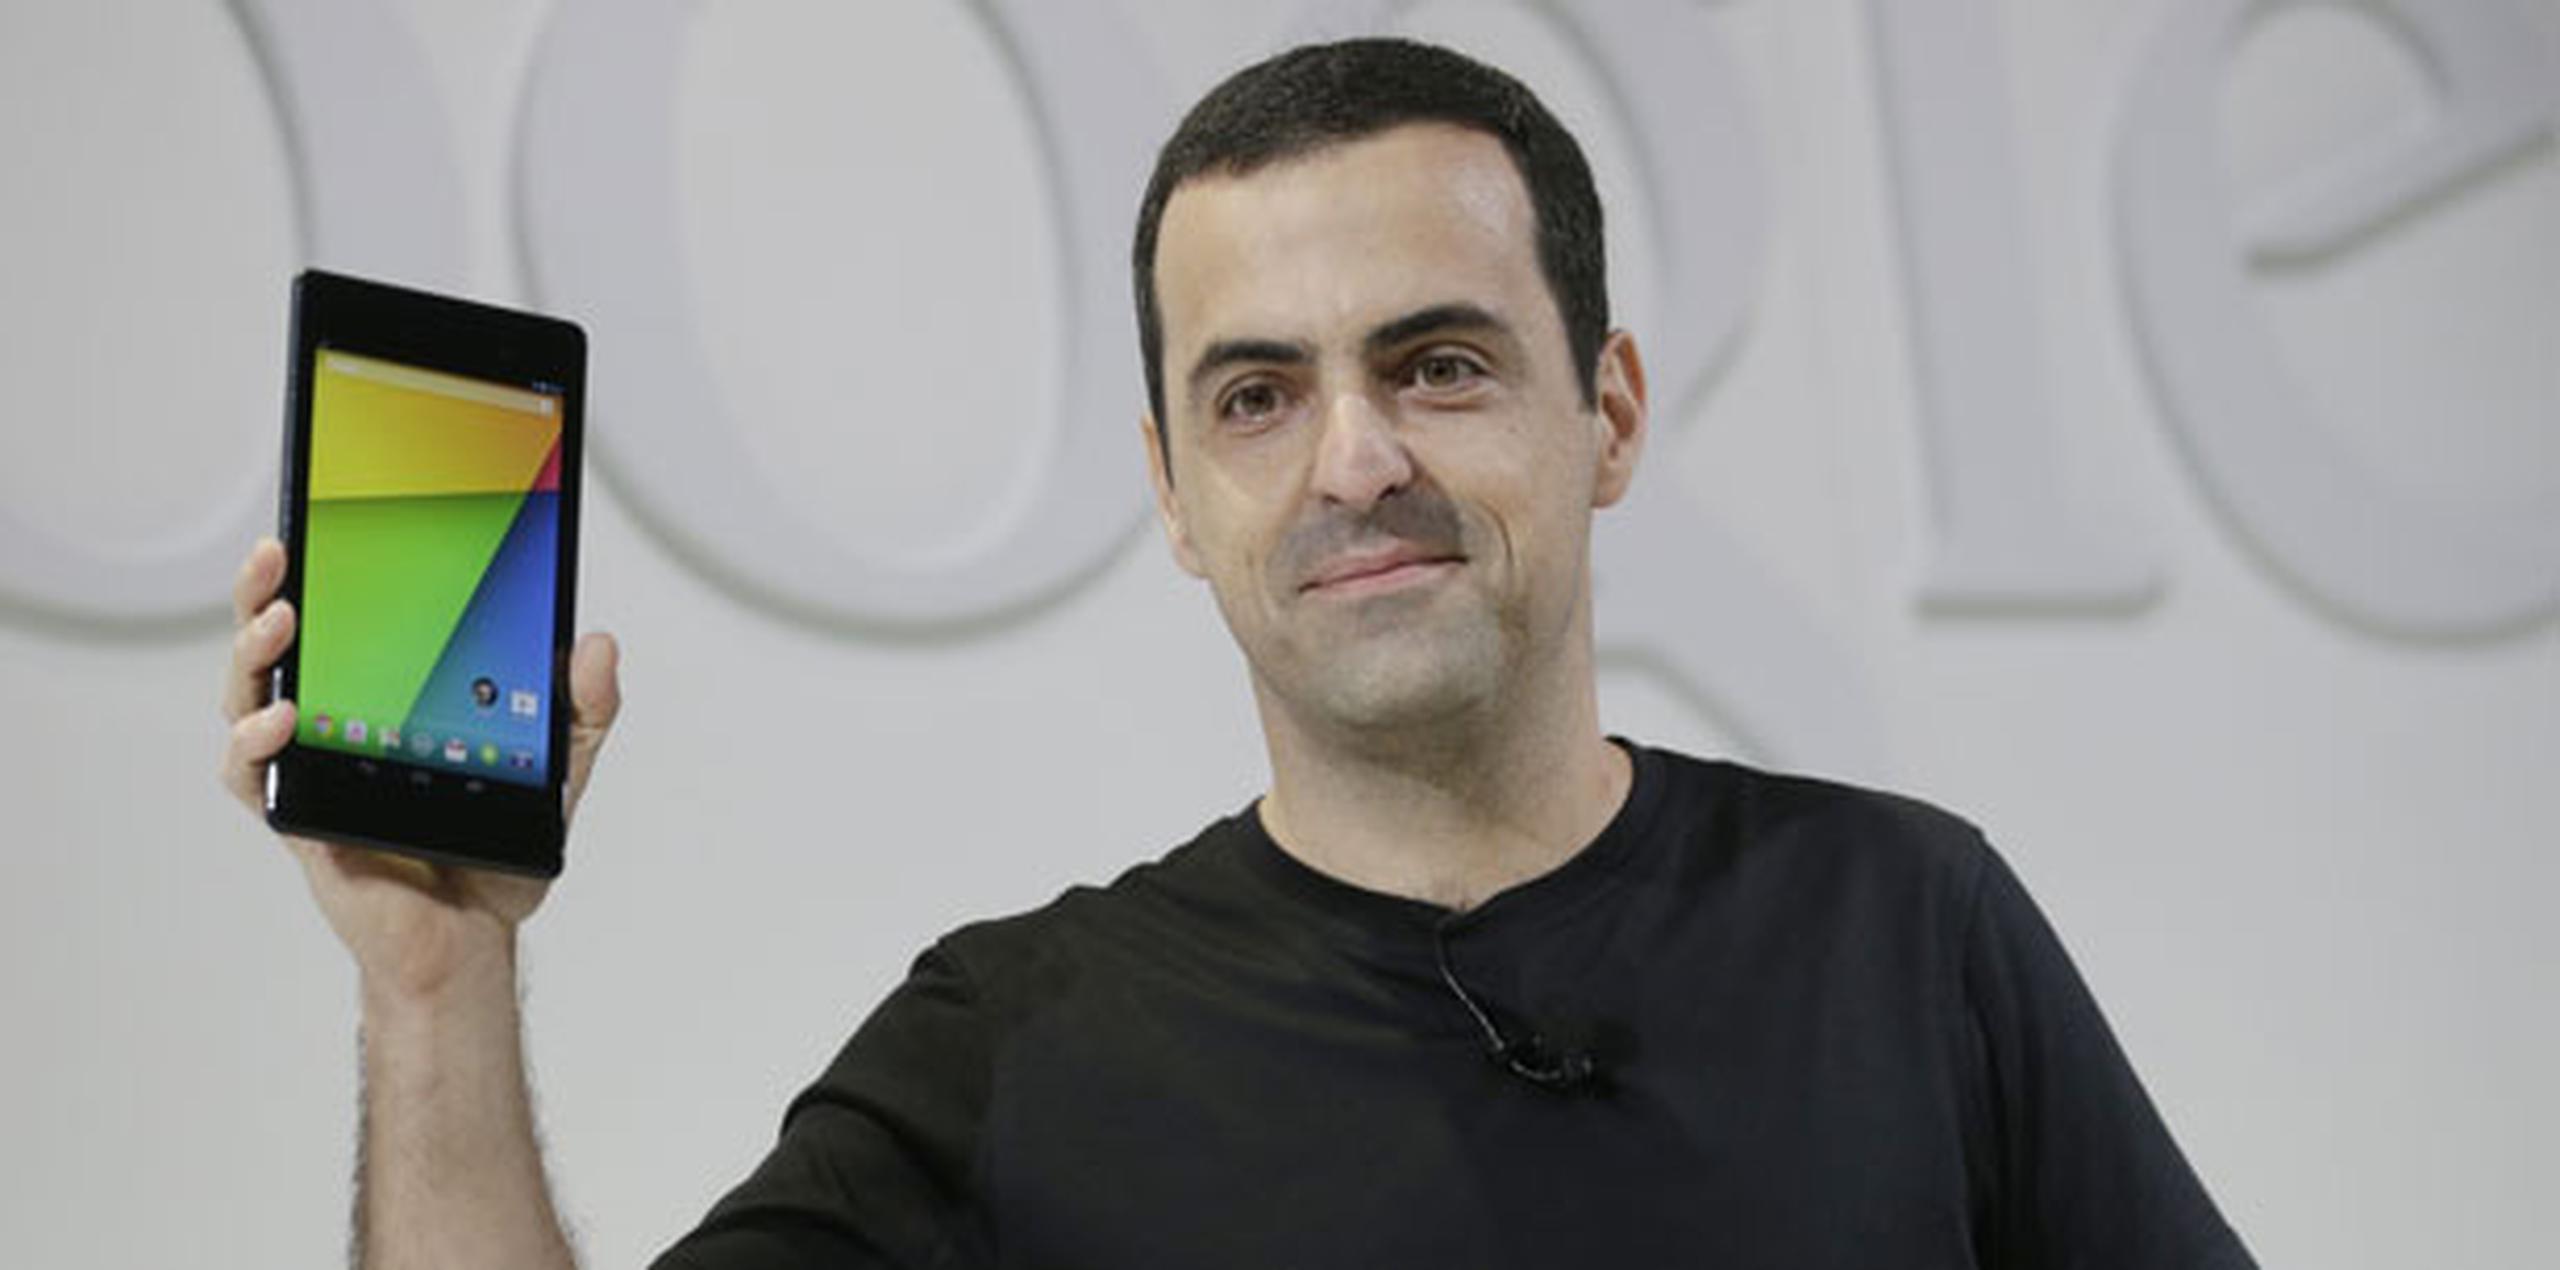 Hugo Barra, de Google, junto a la nueva Nexus 7. (Prensa Asociada /Marcio Jose Sanchez)